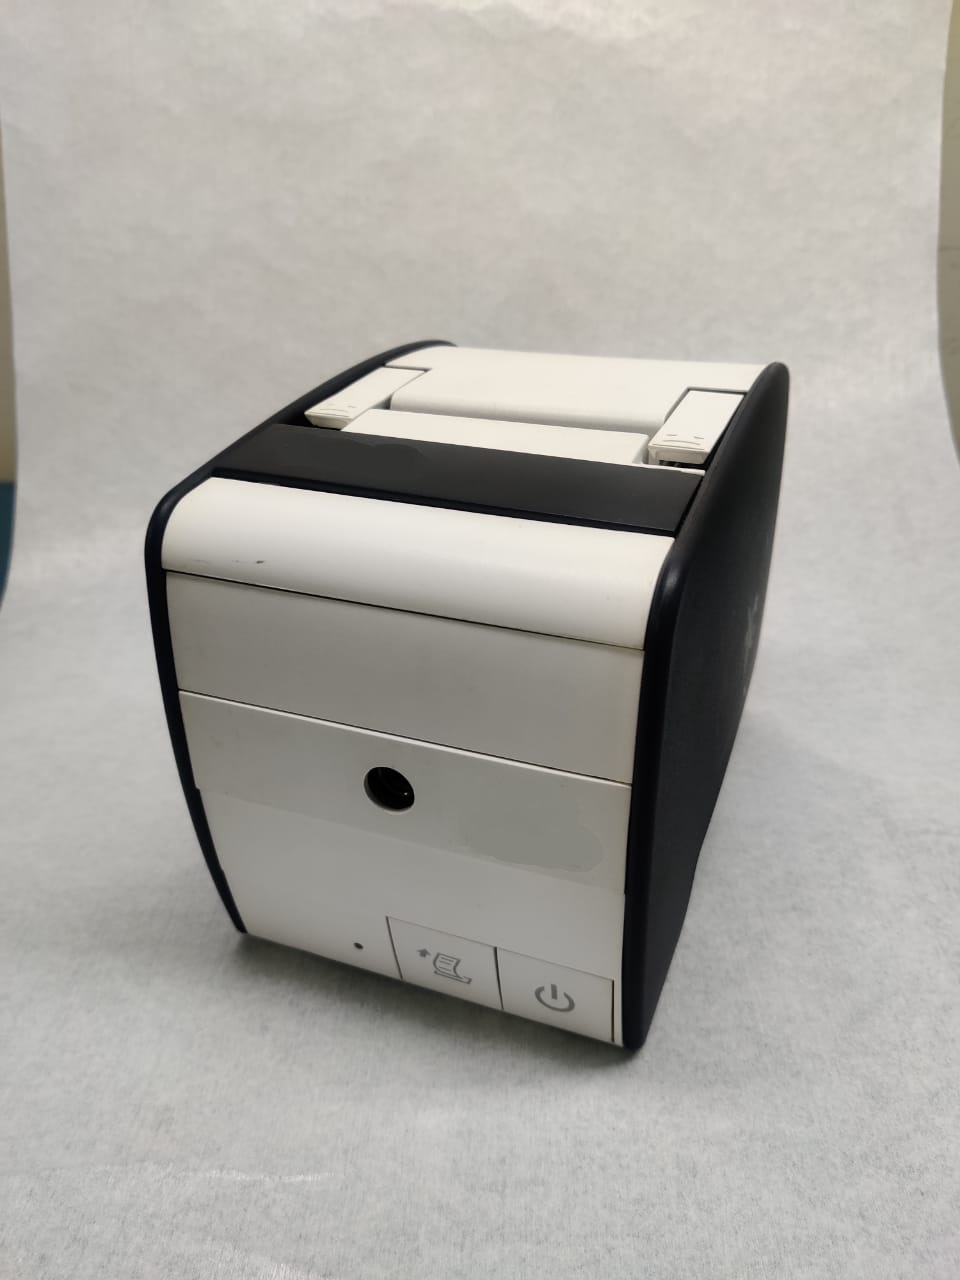 Box build POS Printer